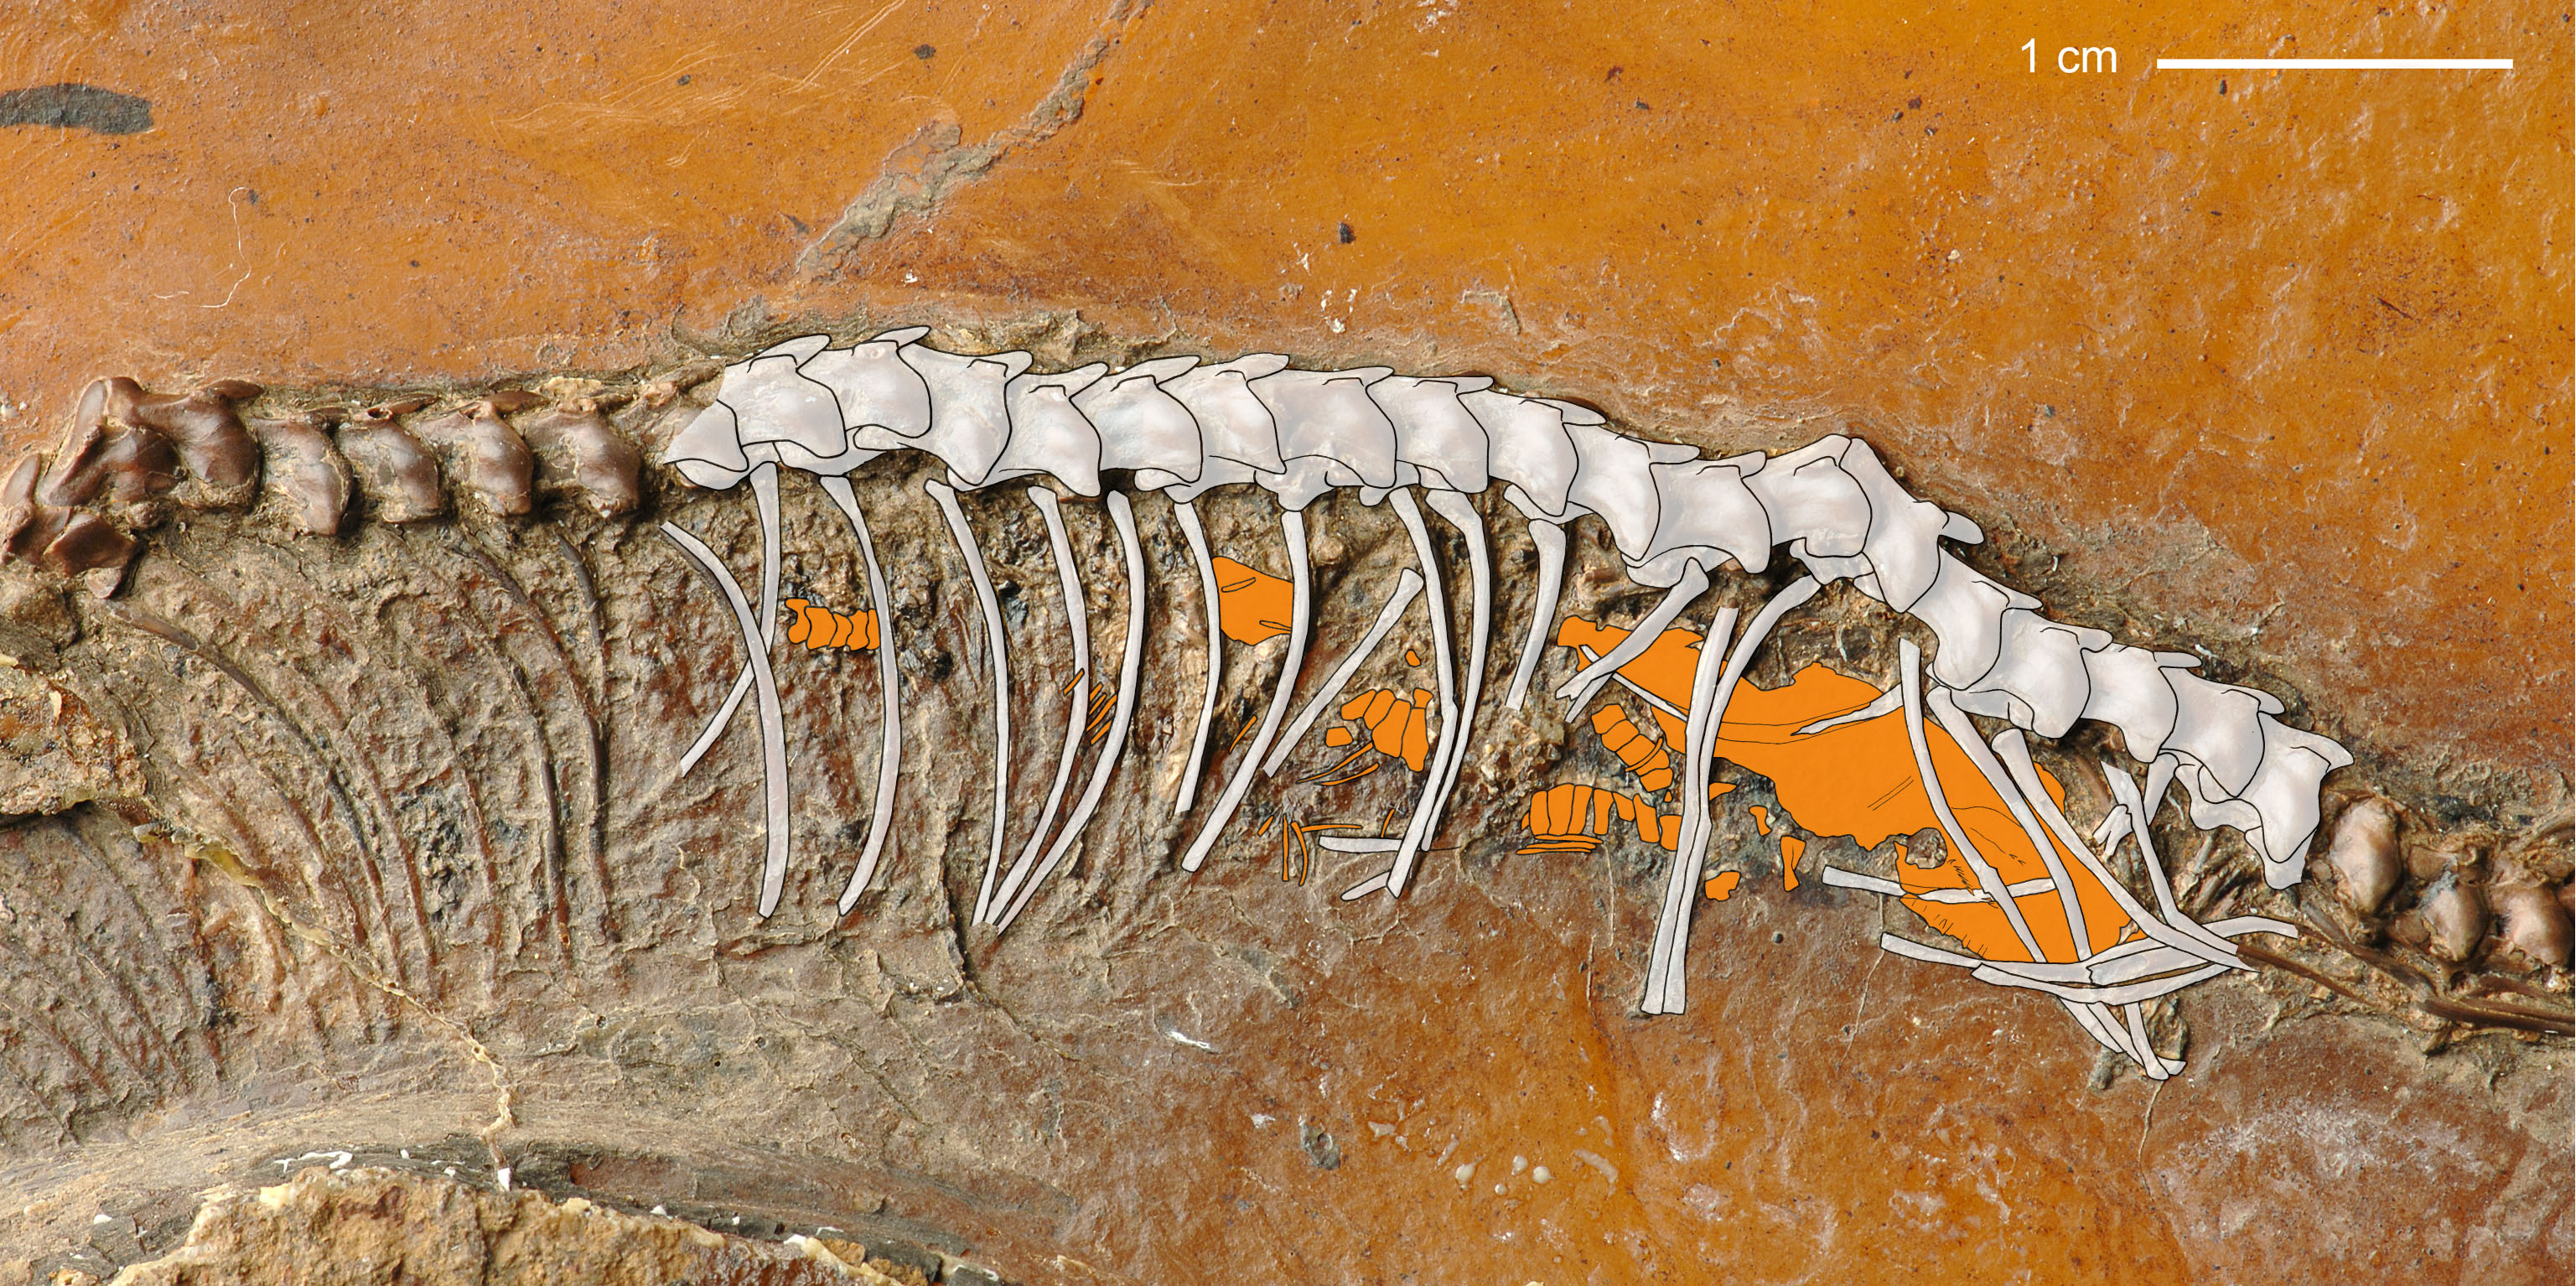 Messelboa 47 Millionen Jahre alt und schwanger